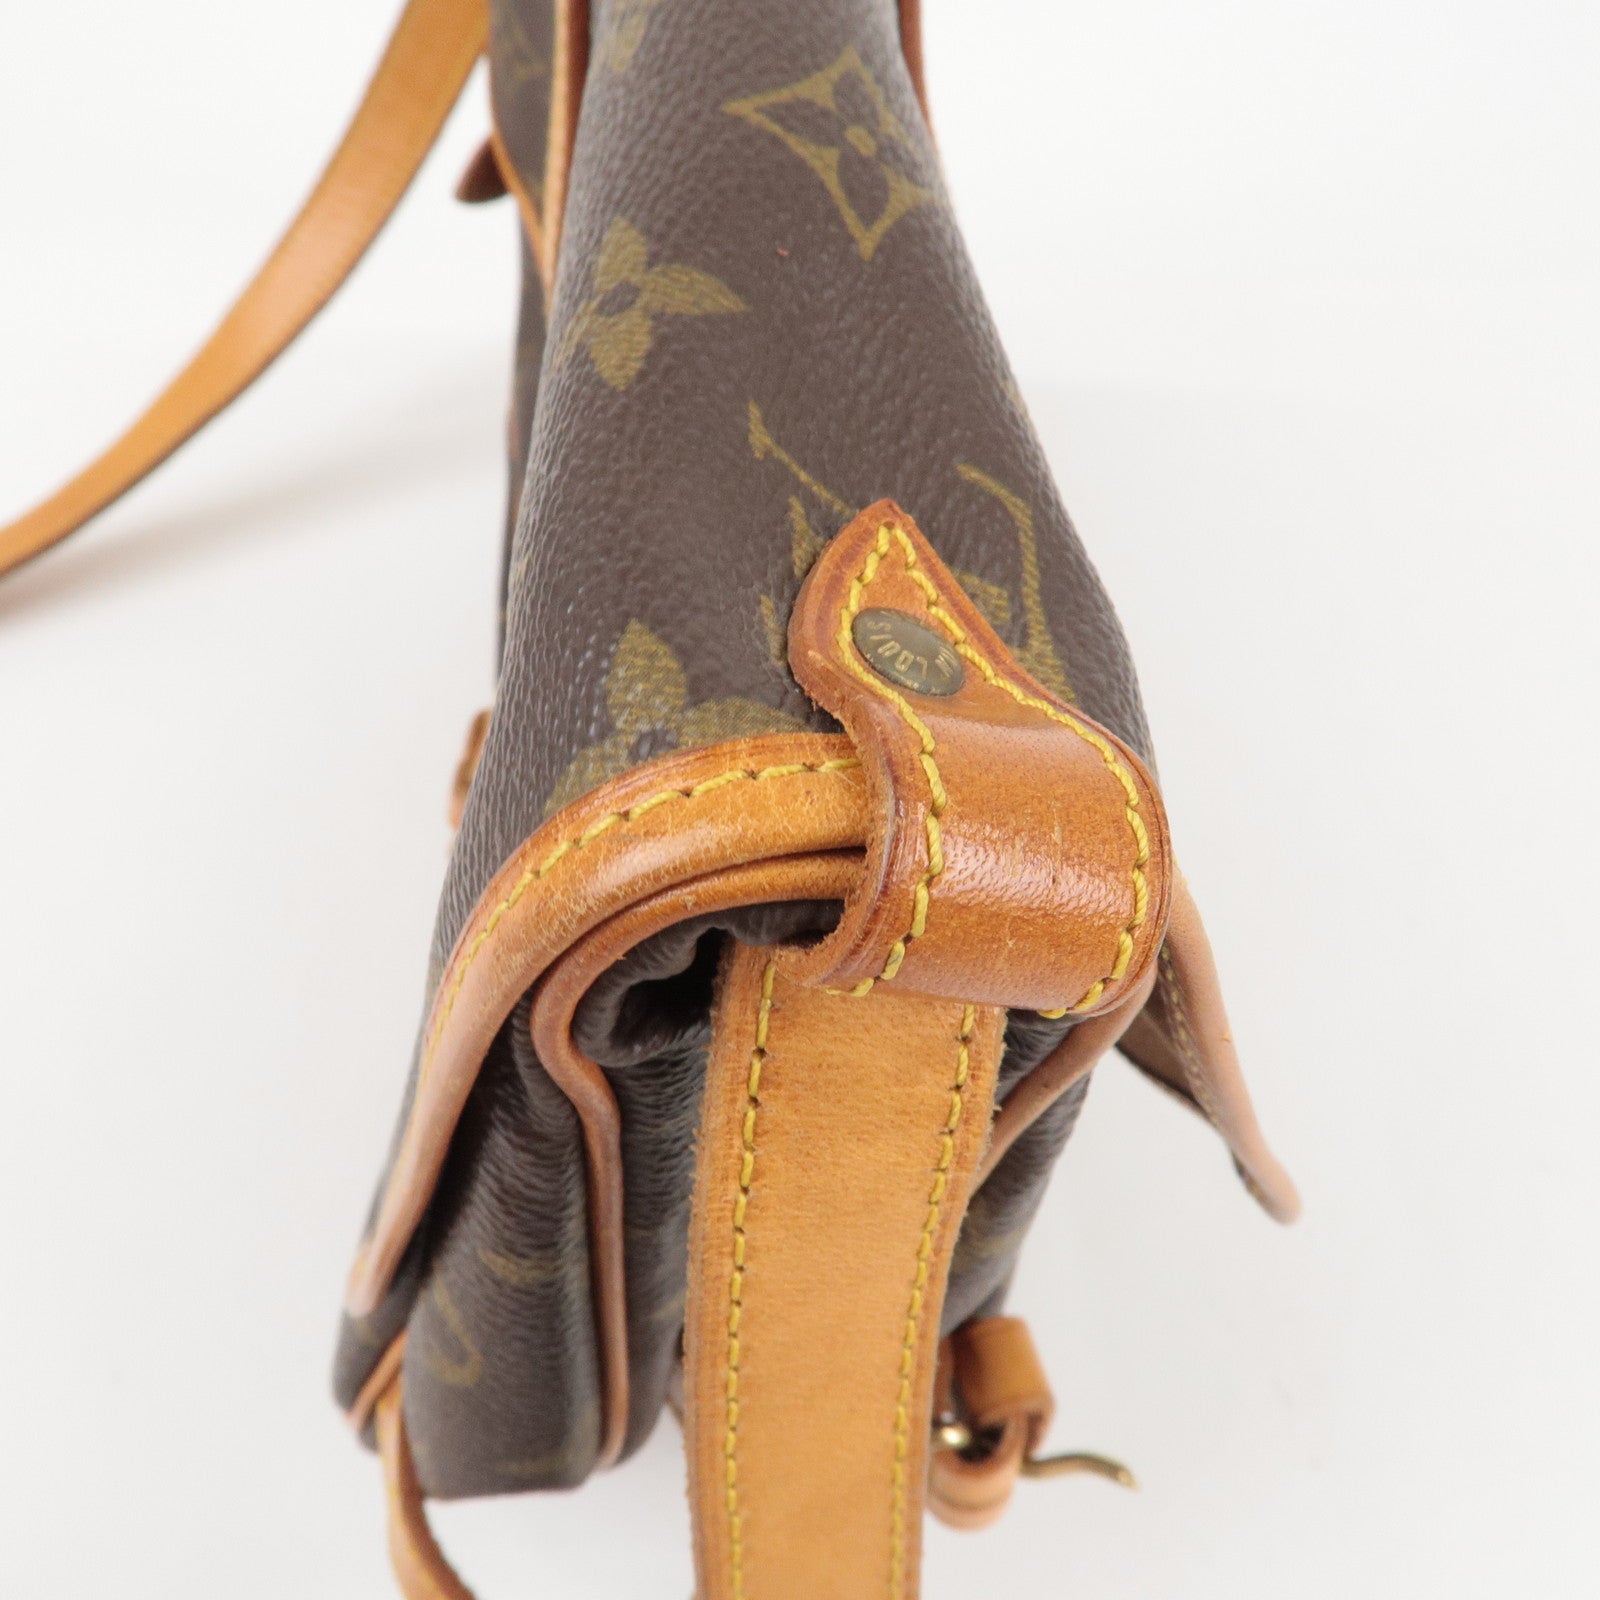 Louis Vuitton Saumur 30 Damier Azur Canvas Shoulder Bag on SALE